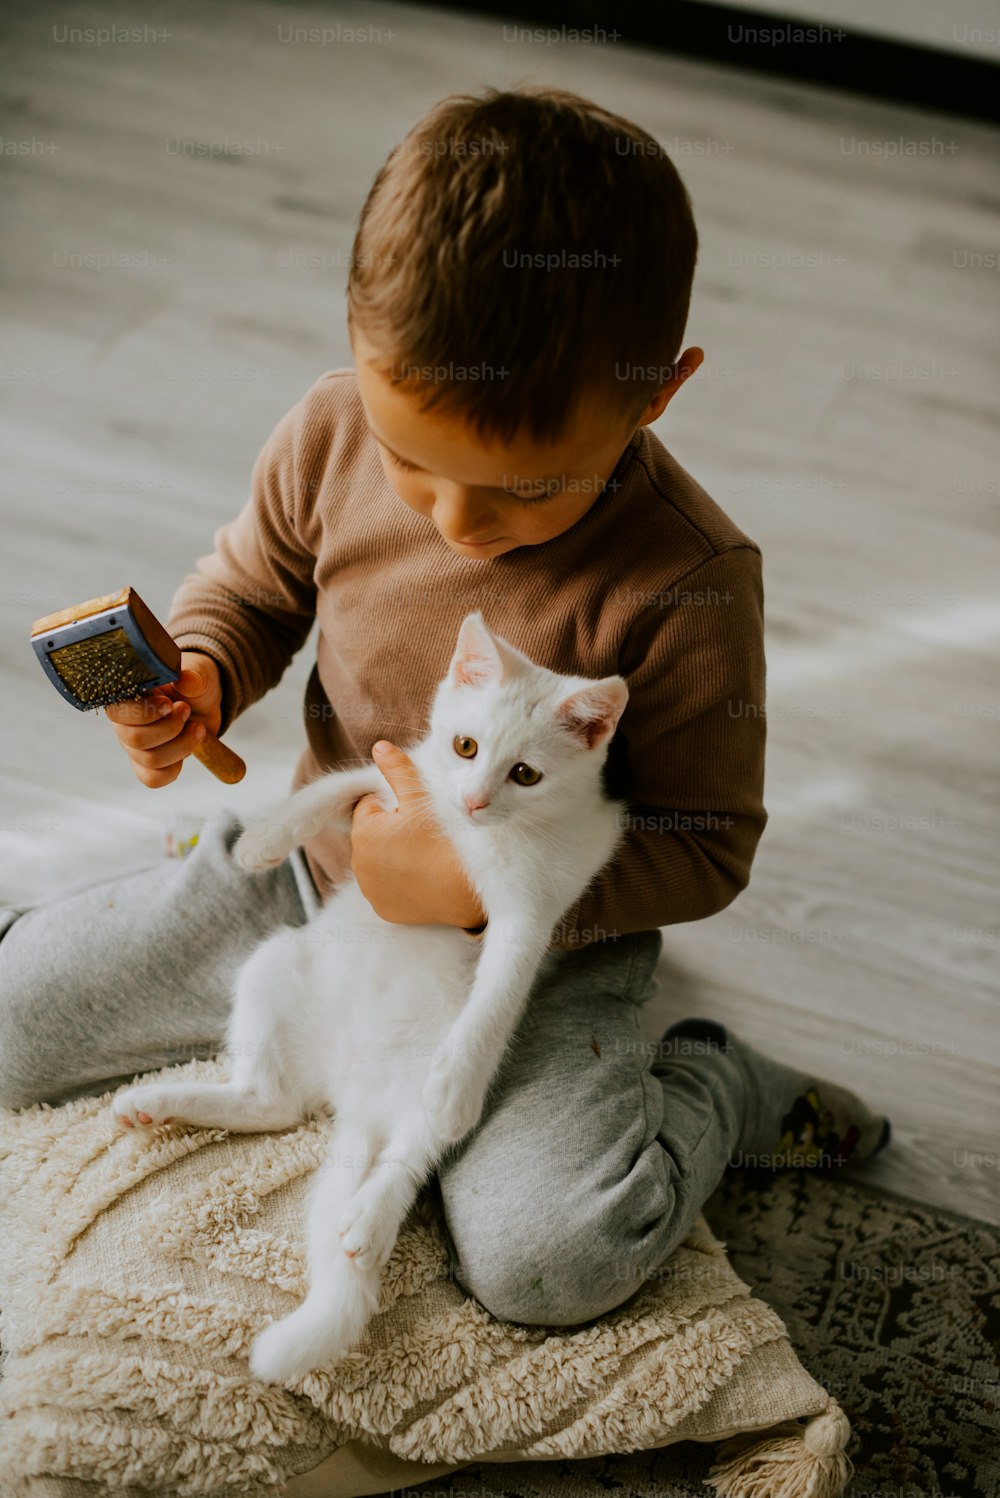 Un jeune garçon tenant un chat blanc assis par terre